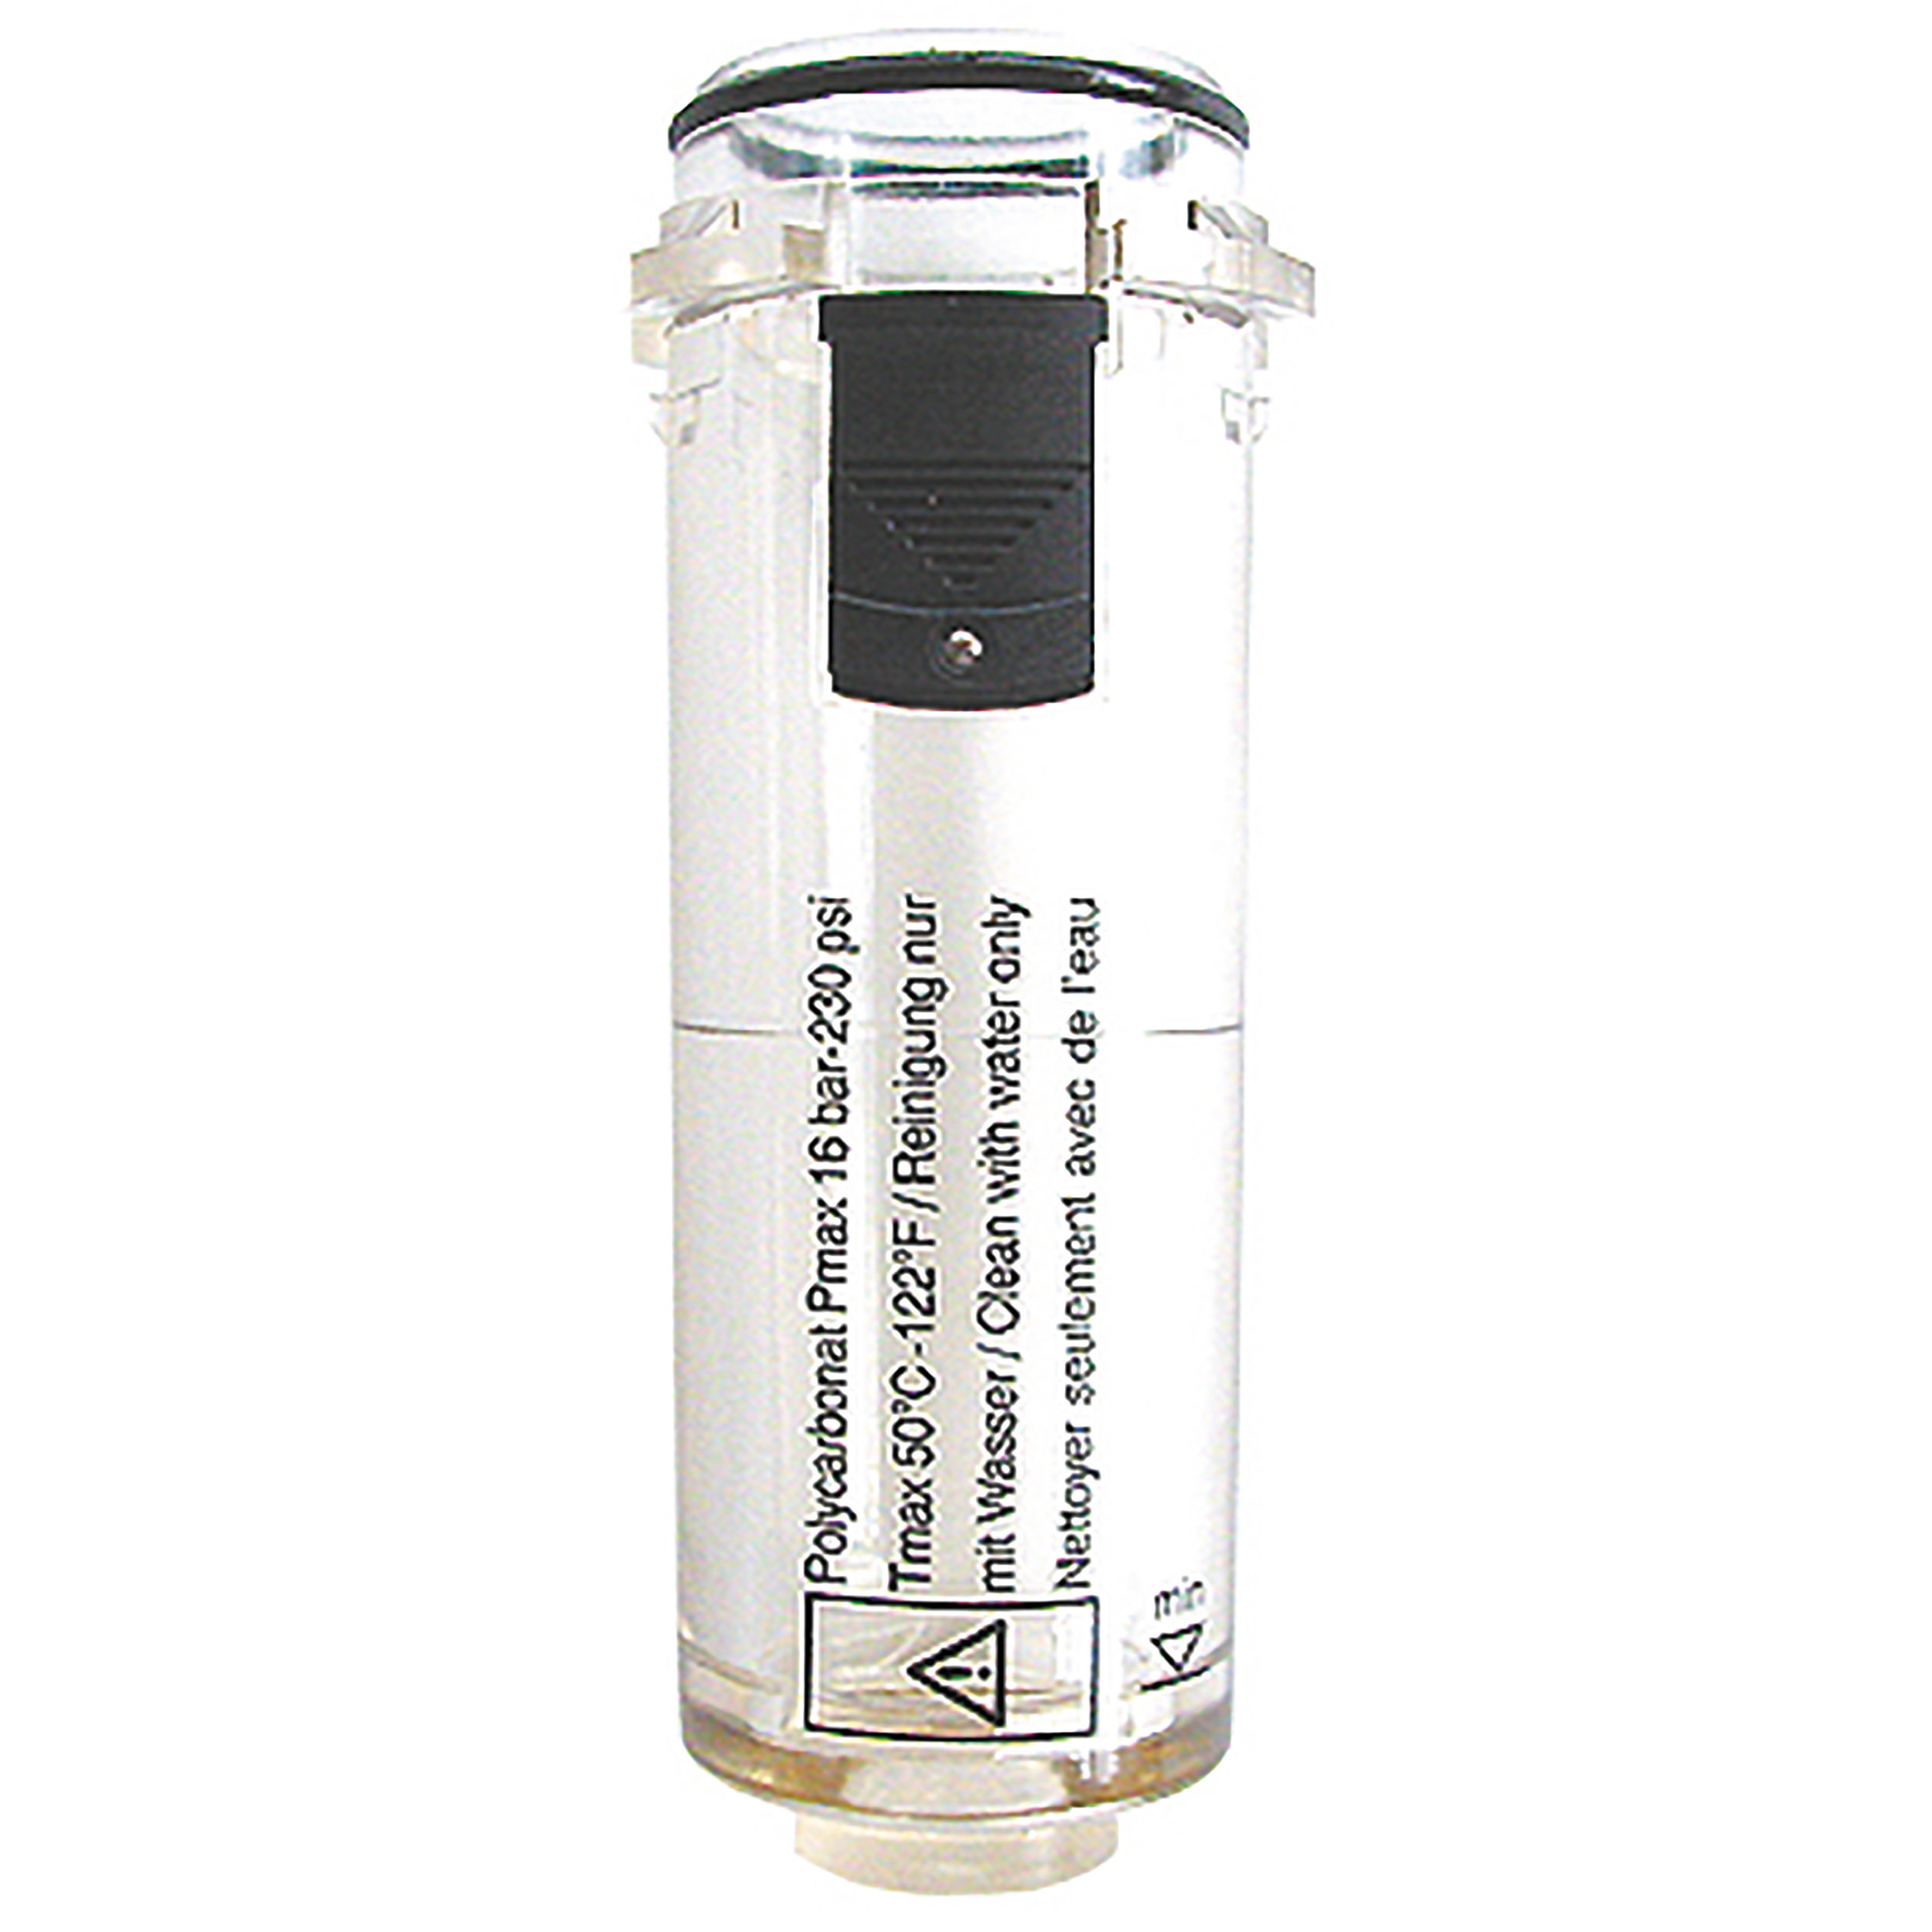 Kunststoffbehäter variobloc, passend für: BG 20, BG 30; ohne Ablassventil, für Öler